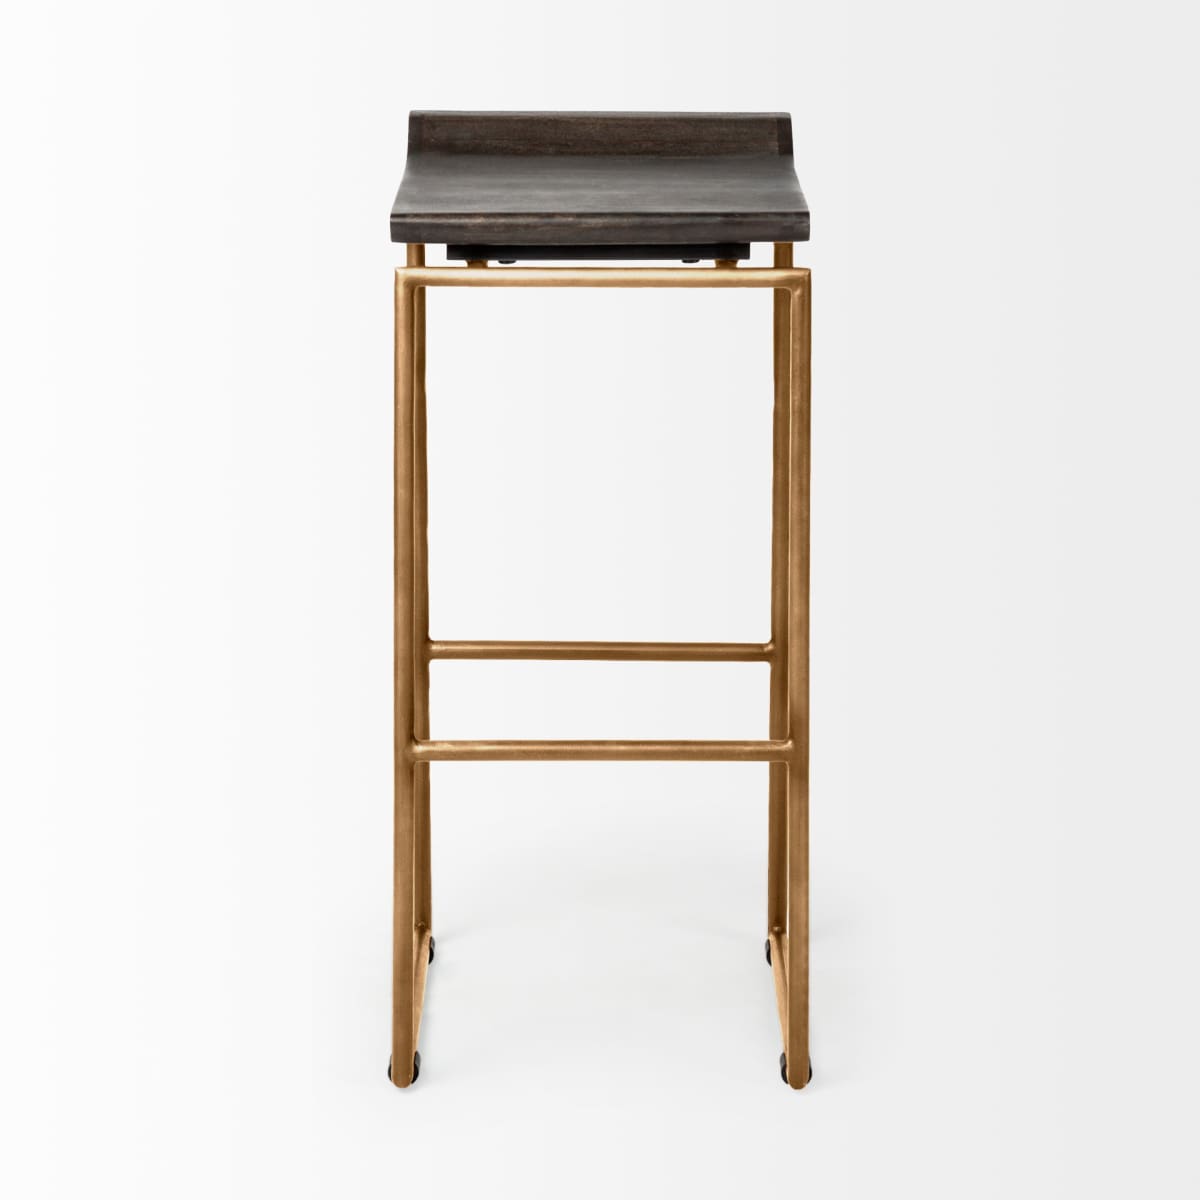 Givens Bar Counter Stool Brown Wood | Gold Metal | Bar - bar-stools